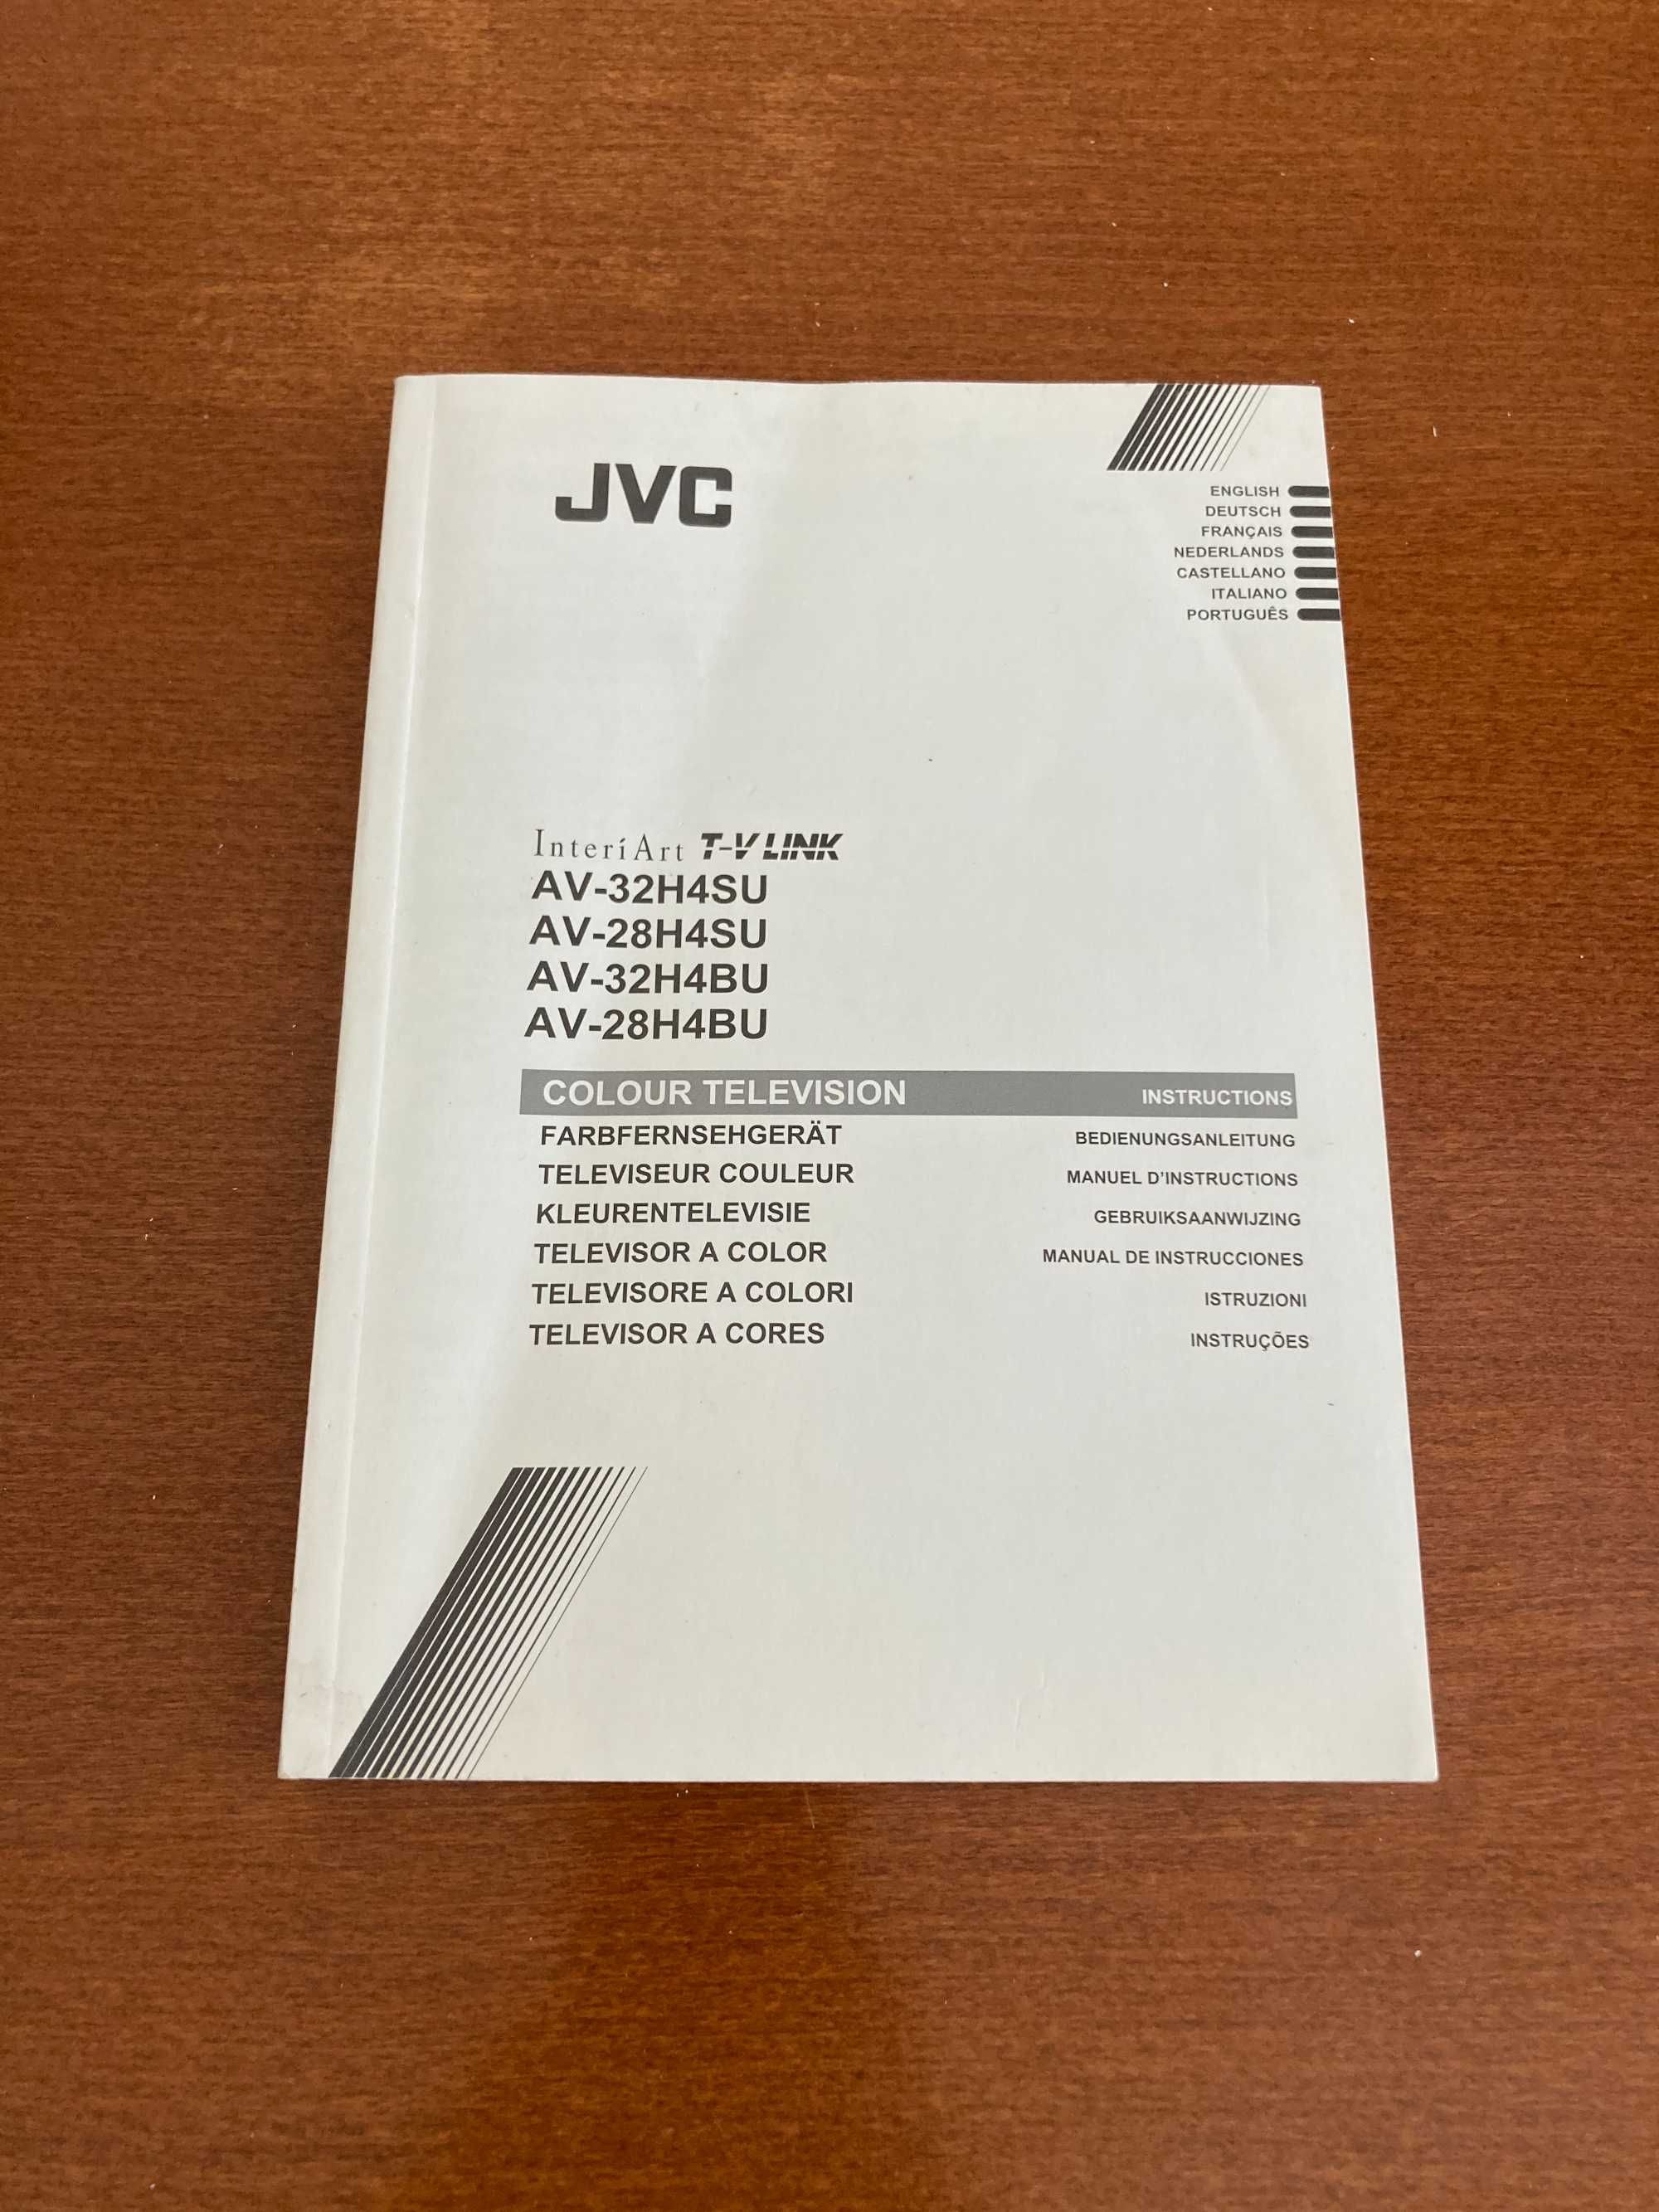 Manual de televisão JVC - AV-32H4SU